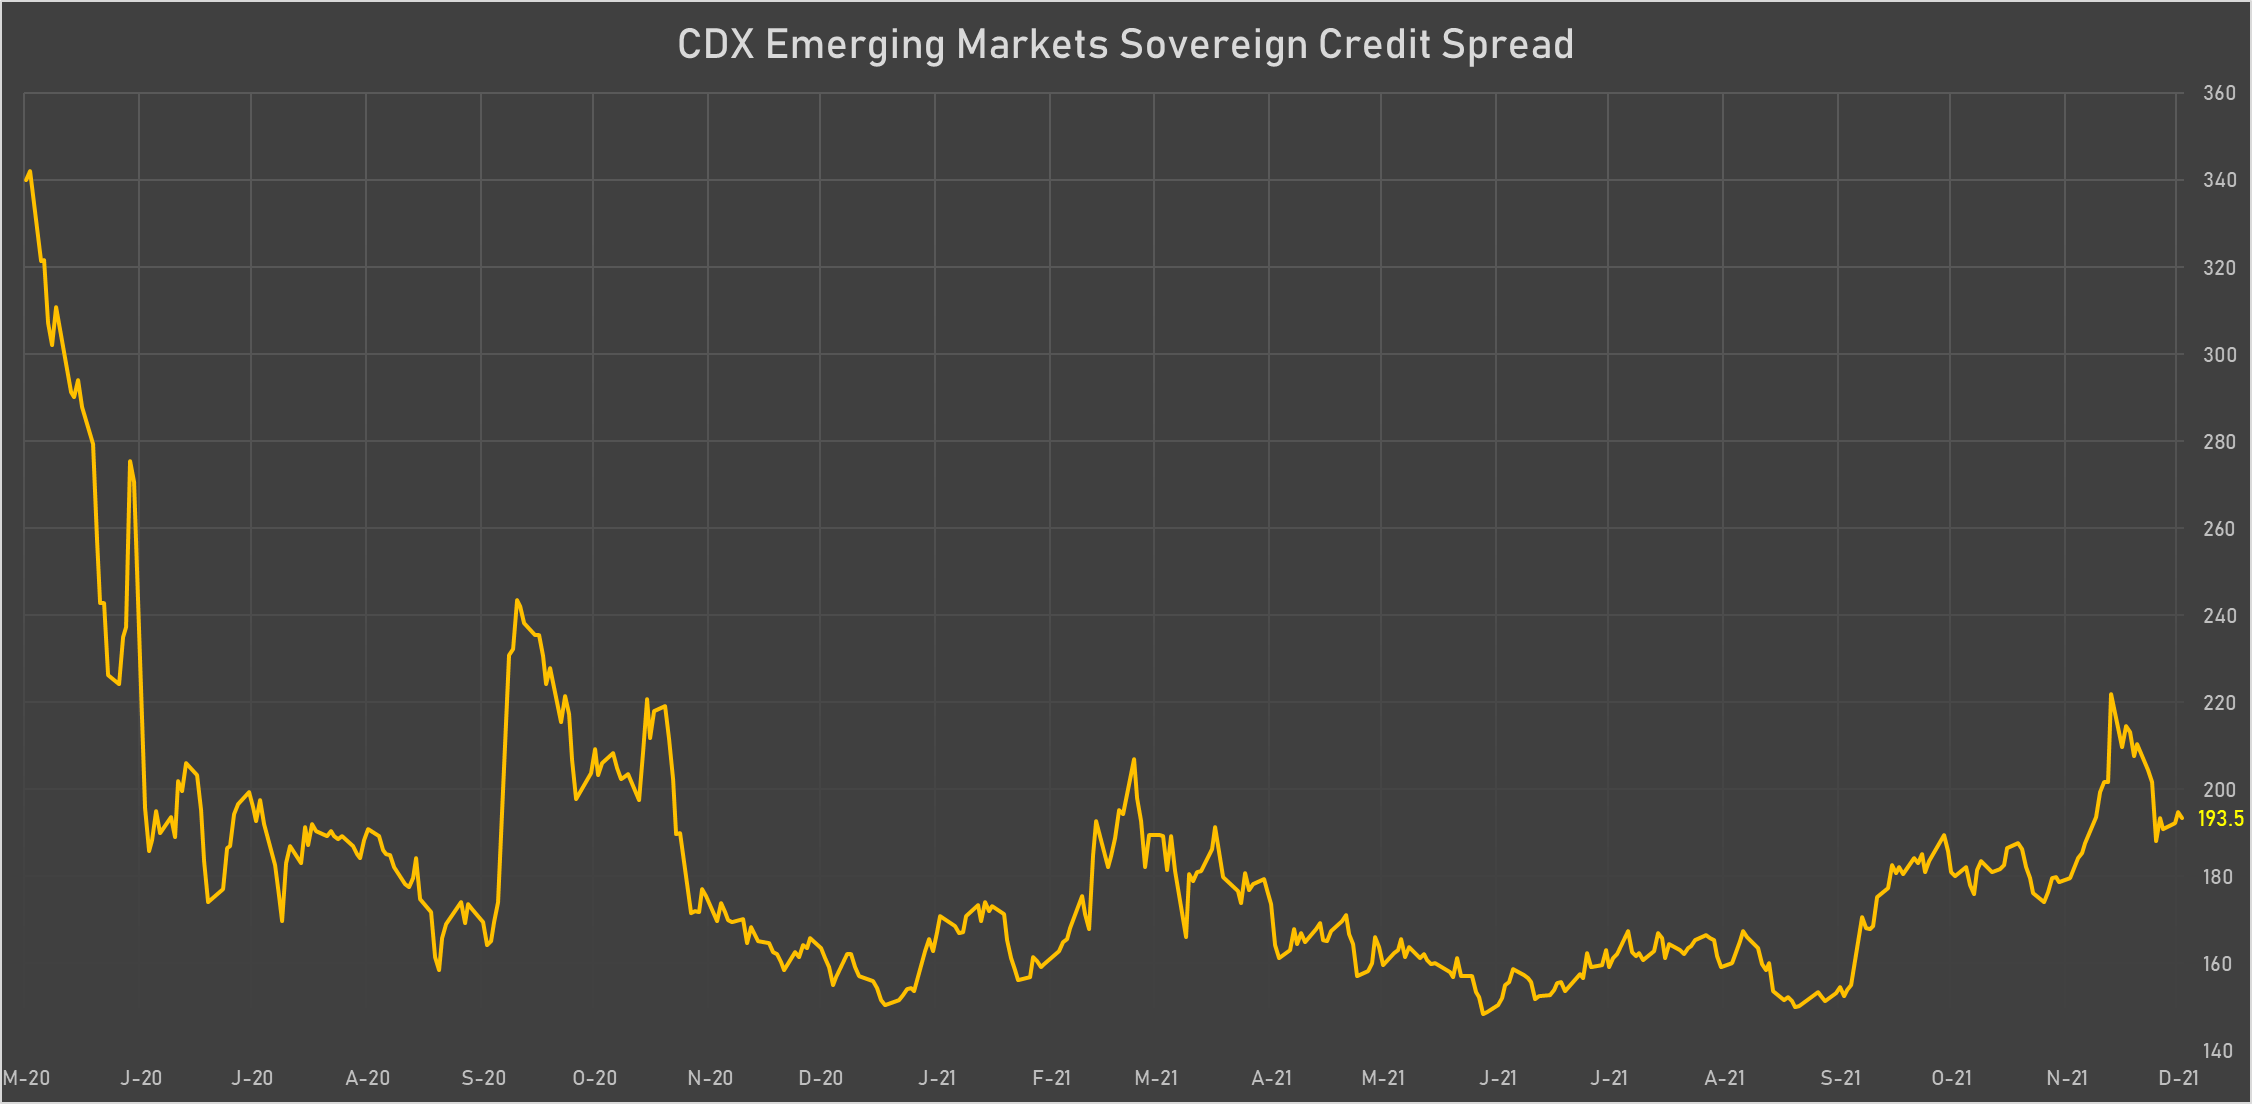 CDX EM Sovereign Credit Spread | Sources: phipost.com, Refinitiv